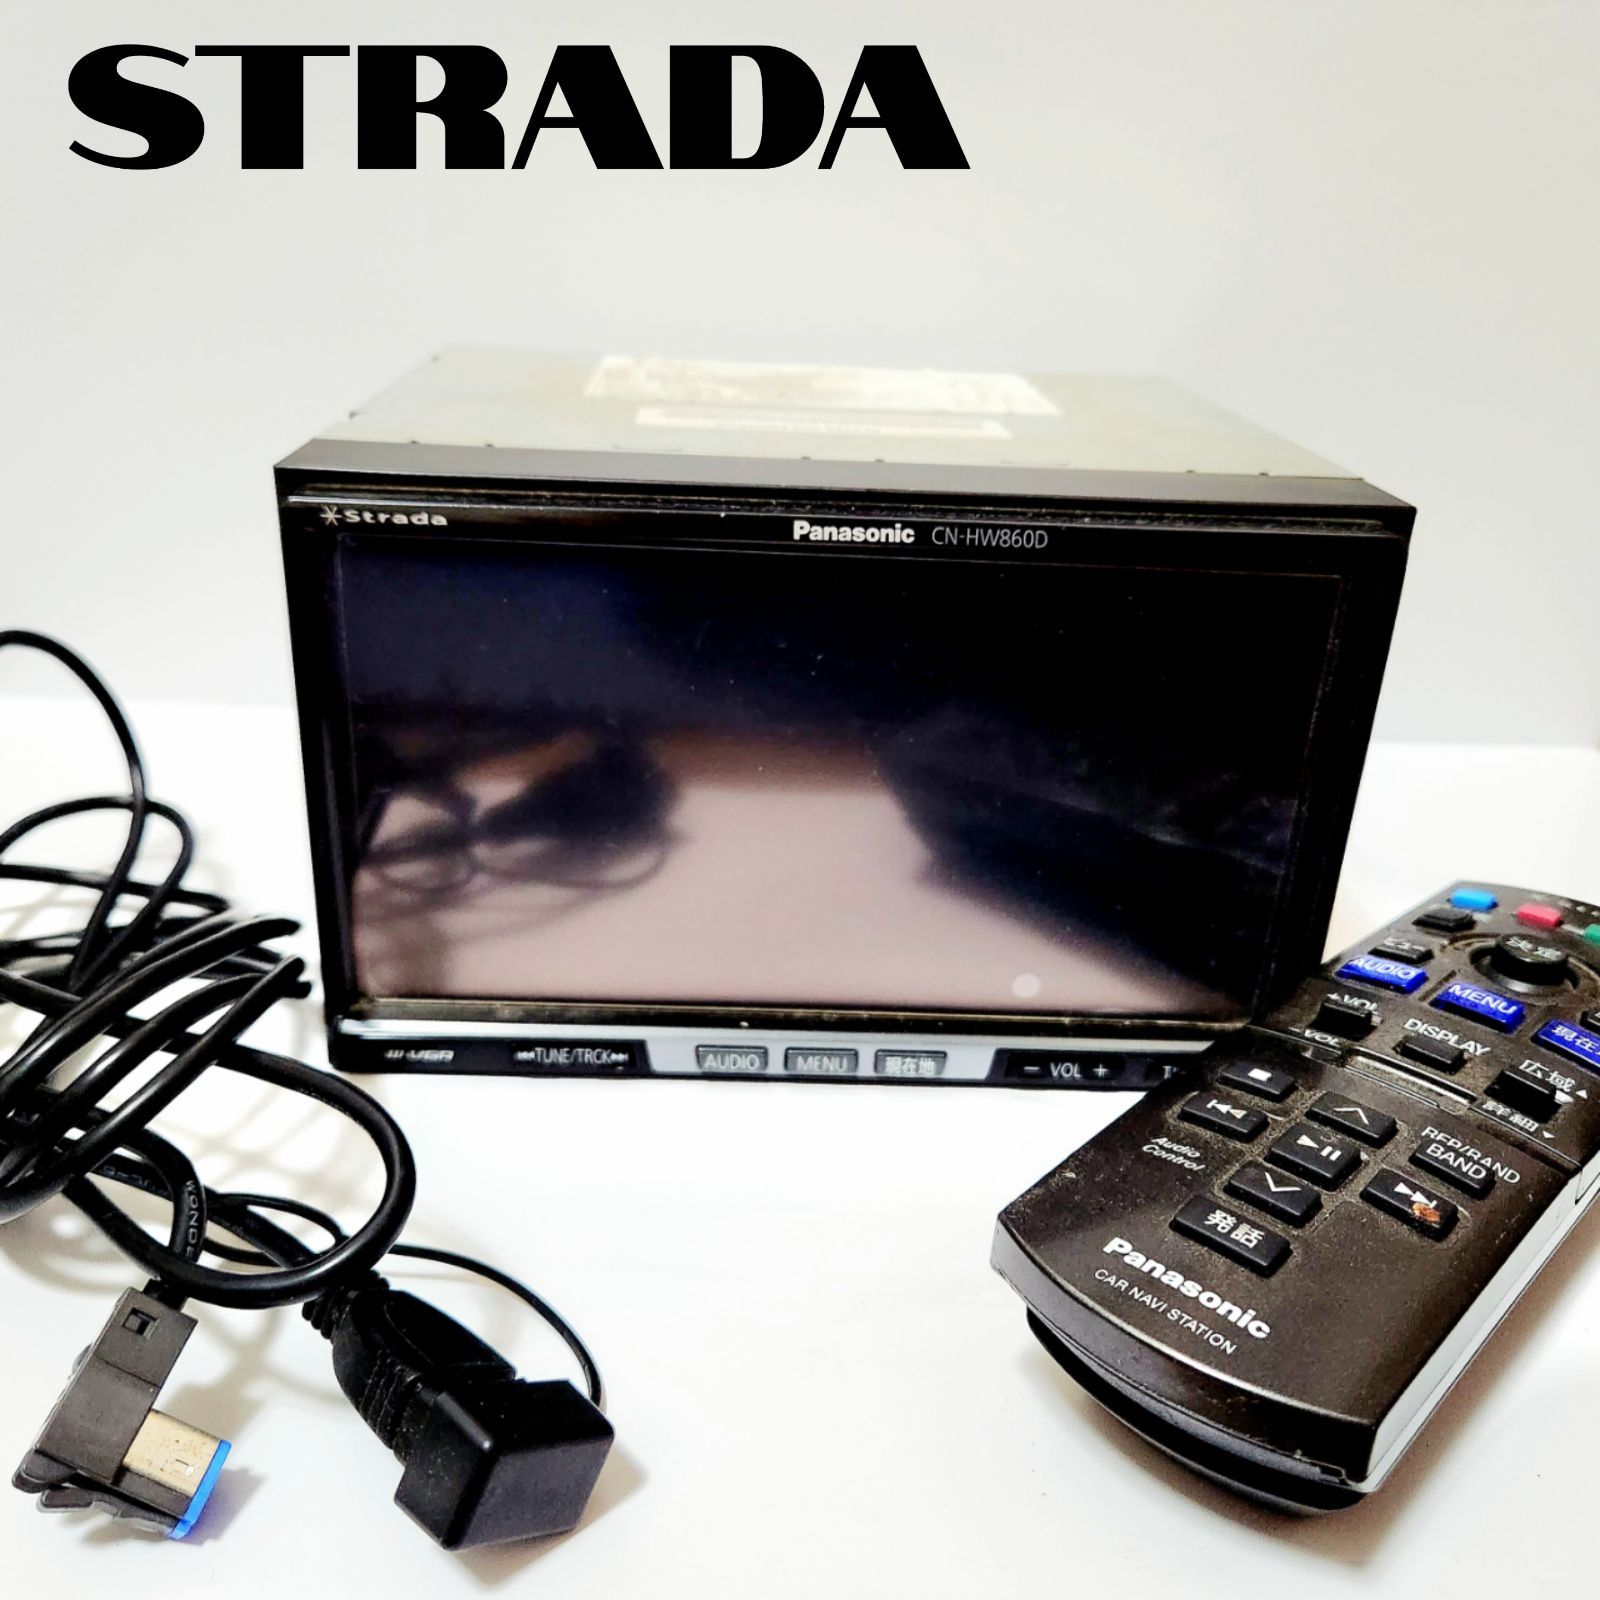 販売廉価★Panasonic Strada HDDナビ CN-HW860 DVDビデオ再生可・CD録音再生・USB・4×4地デジTV内蔵・フィルムアンテナ新品★状態良好 HDDナビ